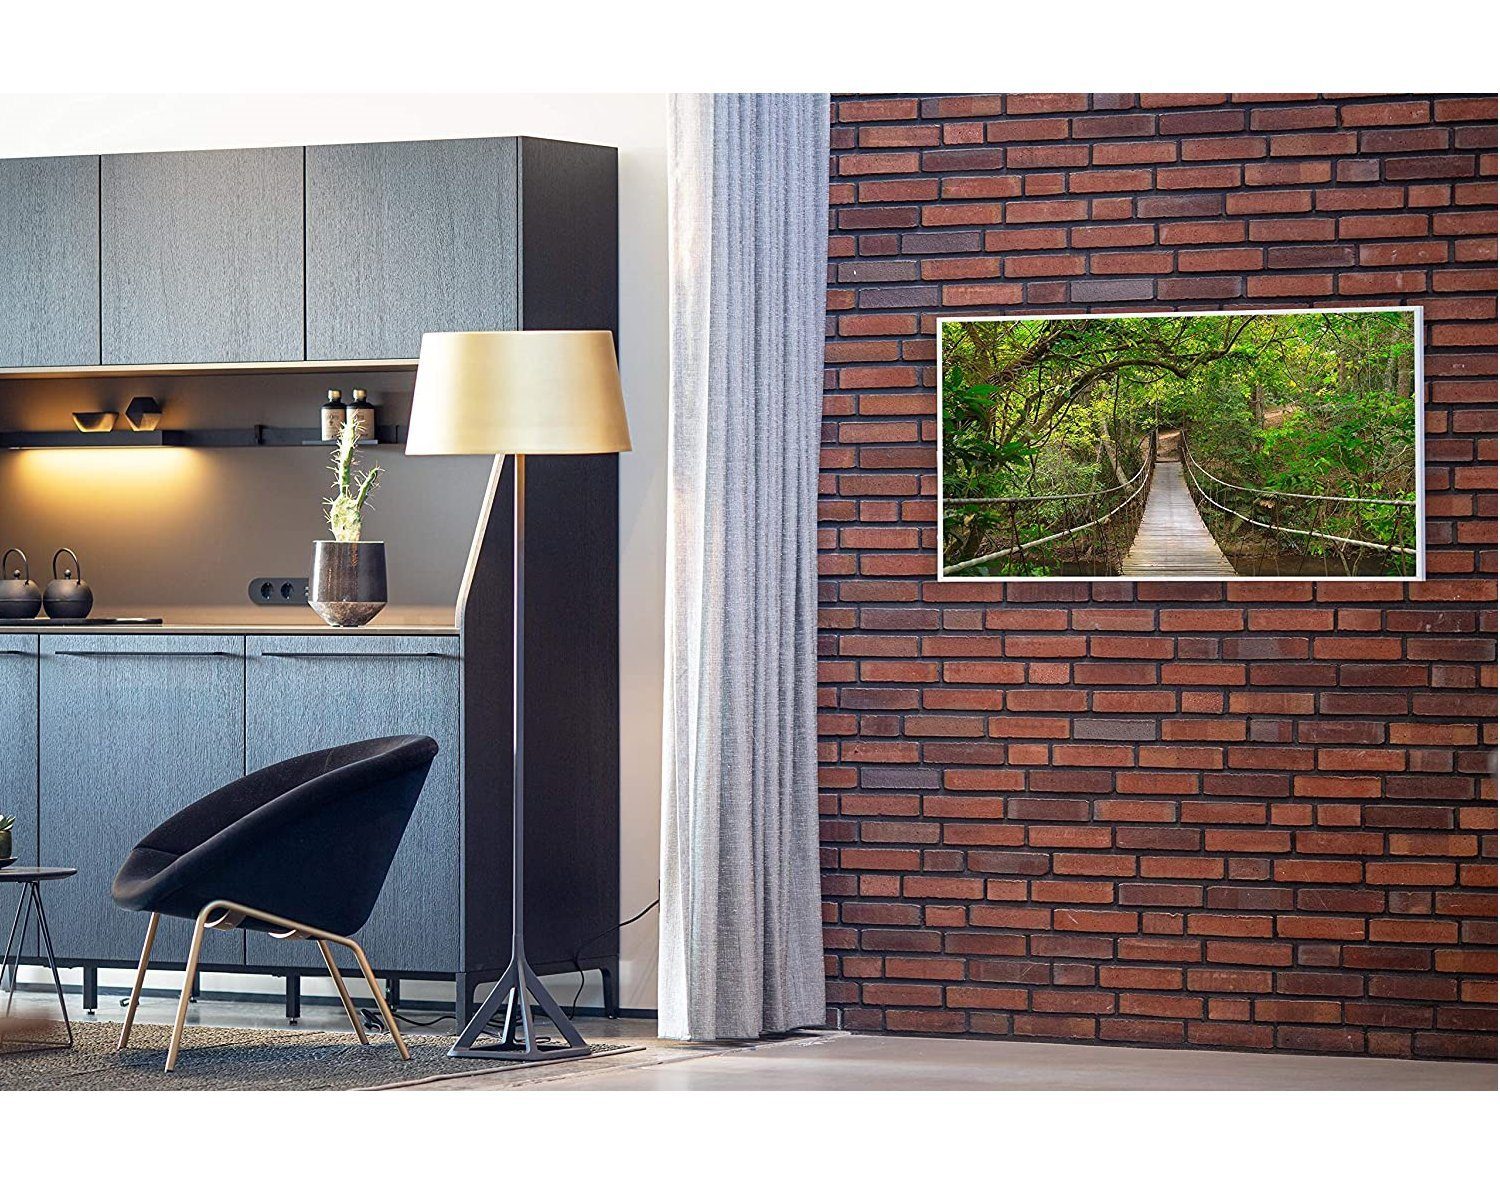 Dschungelbrücke Bild-Serie Strahlungswärme, Smart, Könighaus 800W Infrarotheizung angenehme Germany, Smart Home Made in